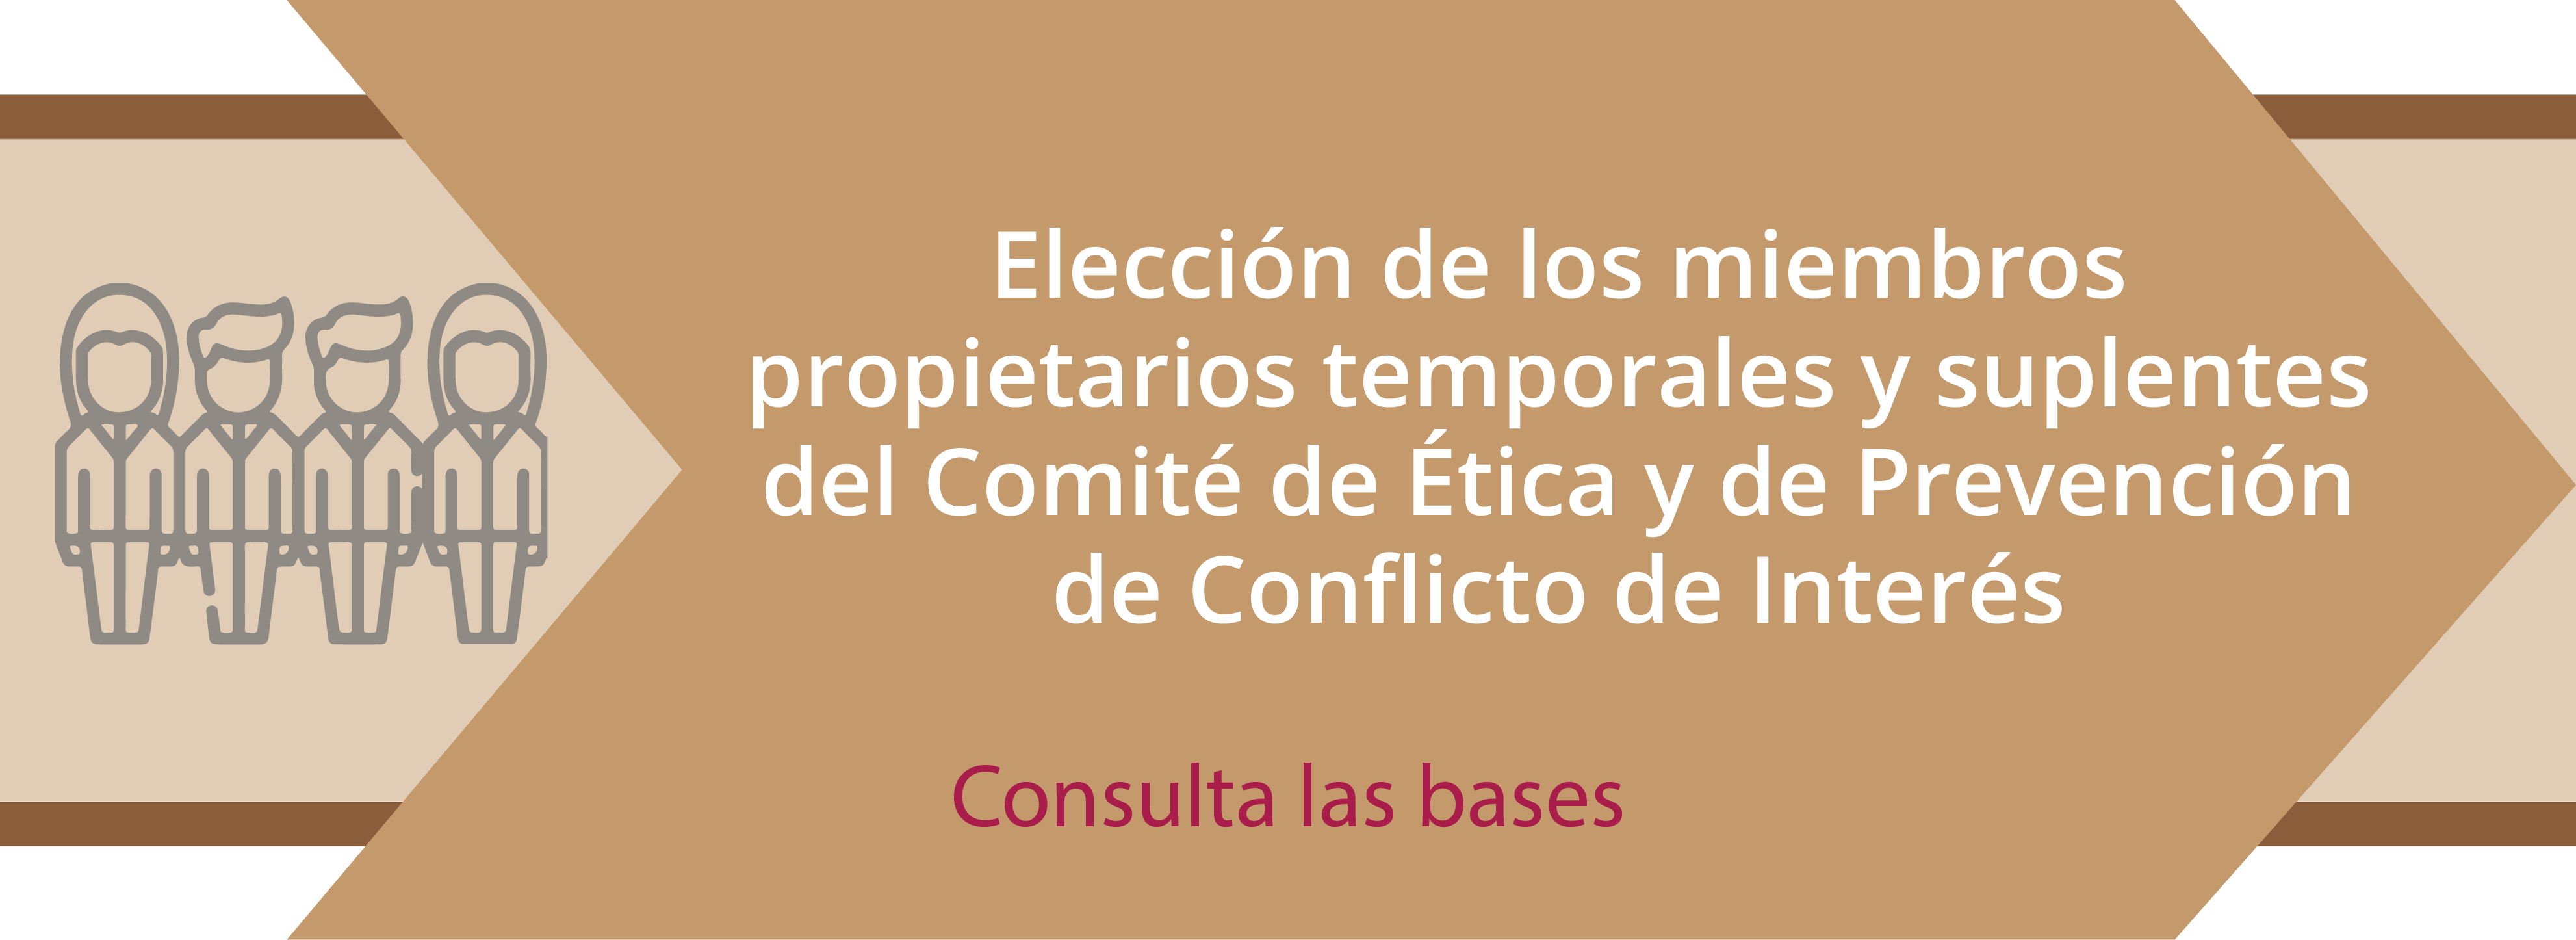 Convocatoria_Comite_de_Etica_banner_web_